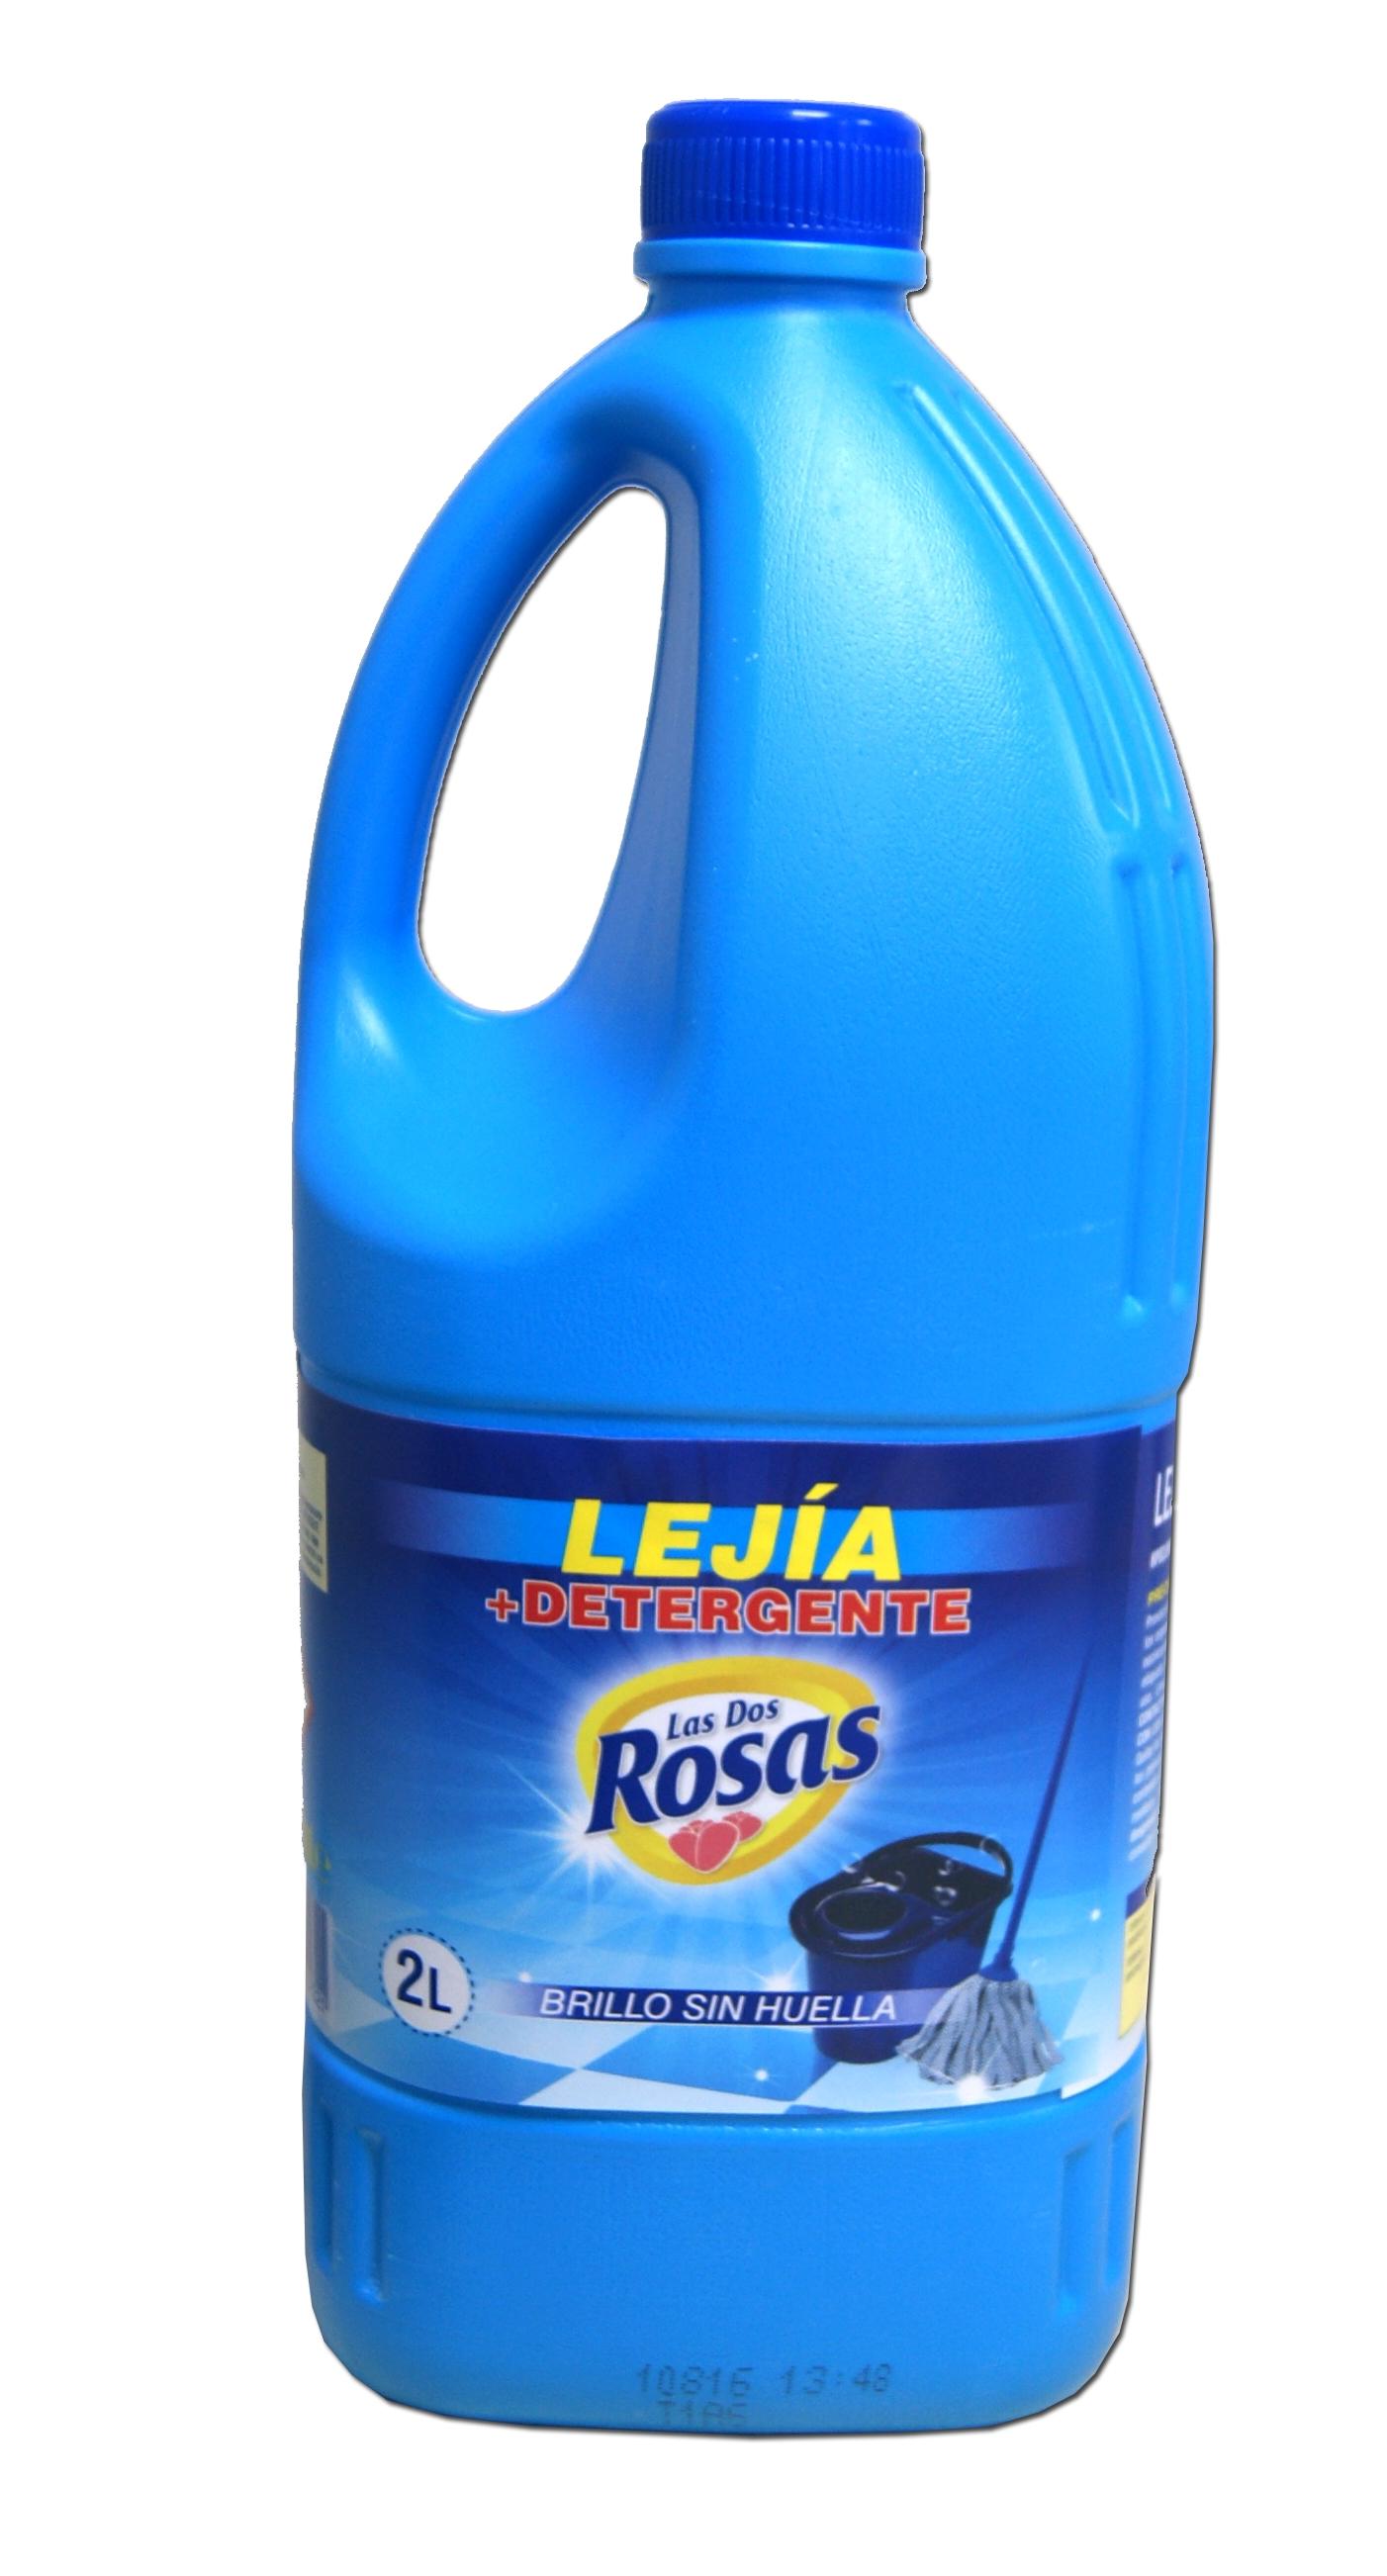 Las 2 Rosas lejía con Detergente 2L 